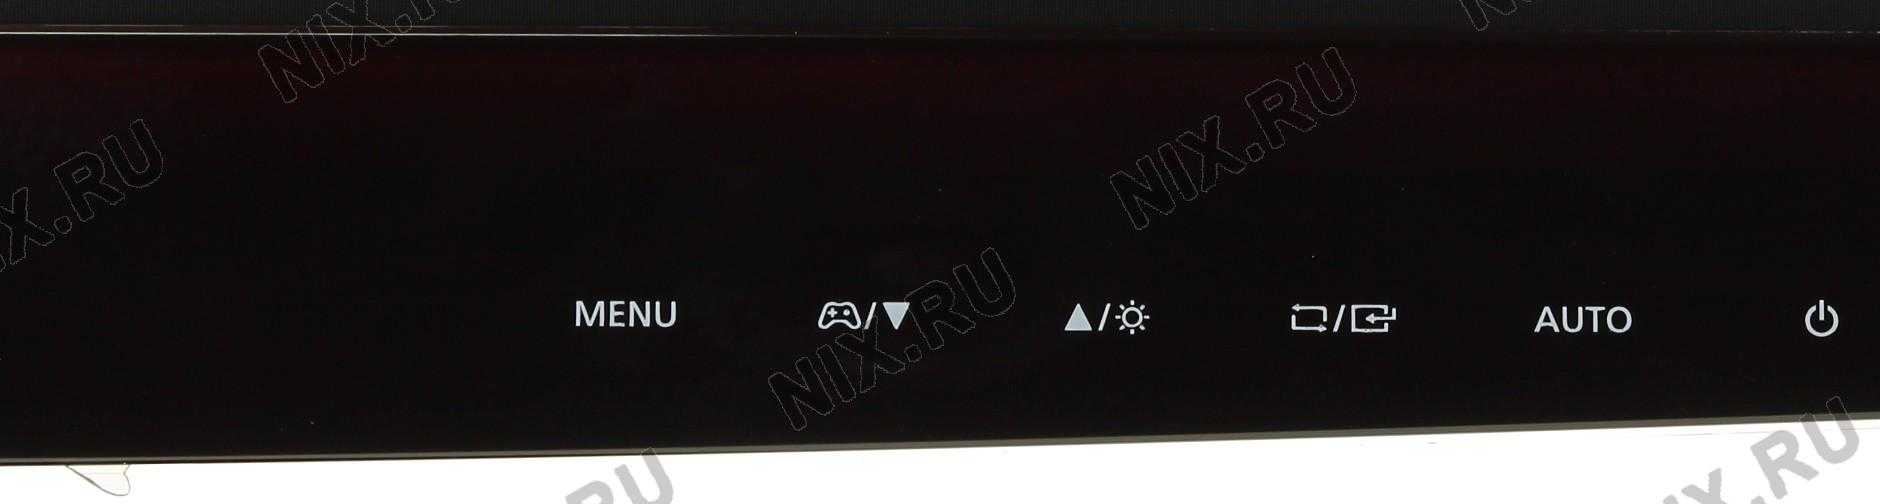 Жк монитор 21.5" samsung s22d300hy — купить, цена и характеристики, отзывы